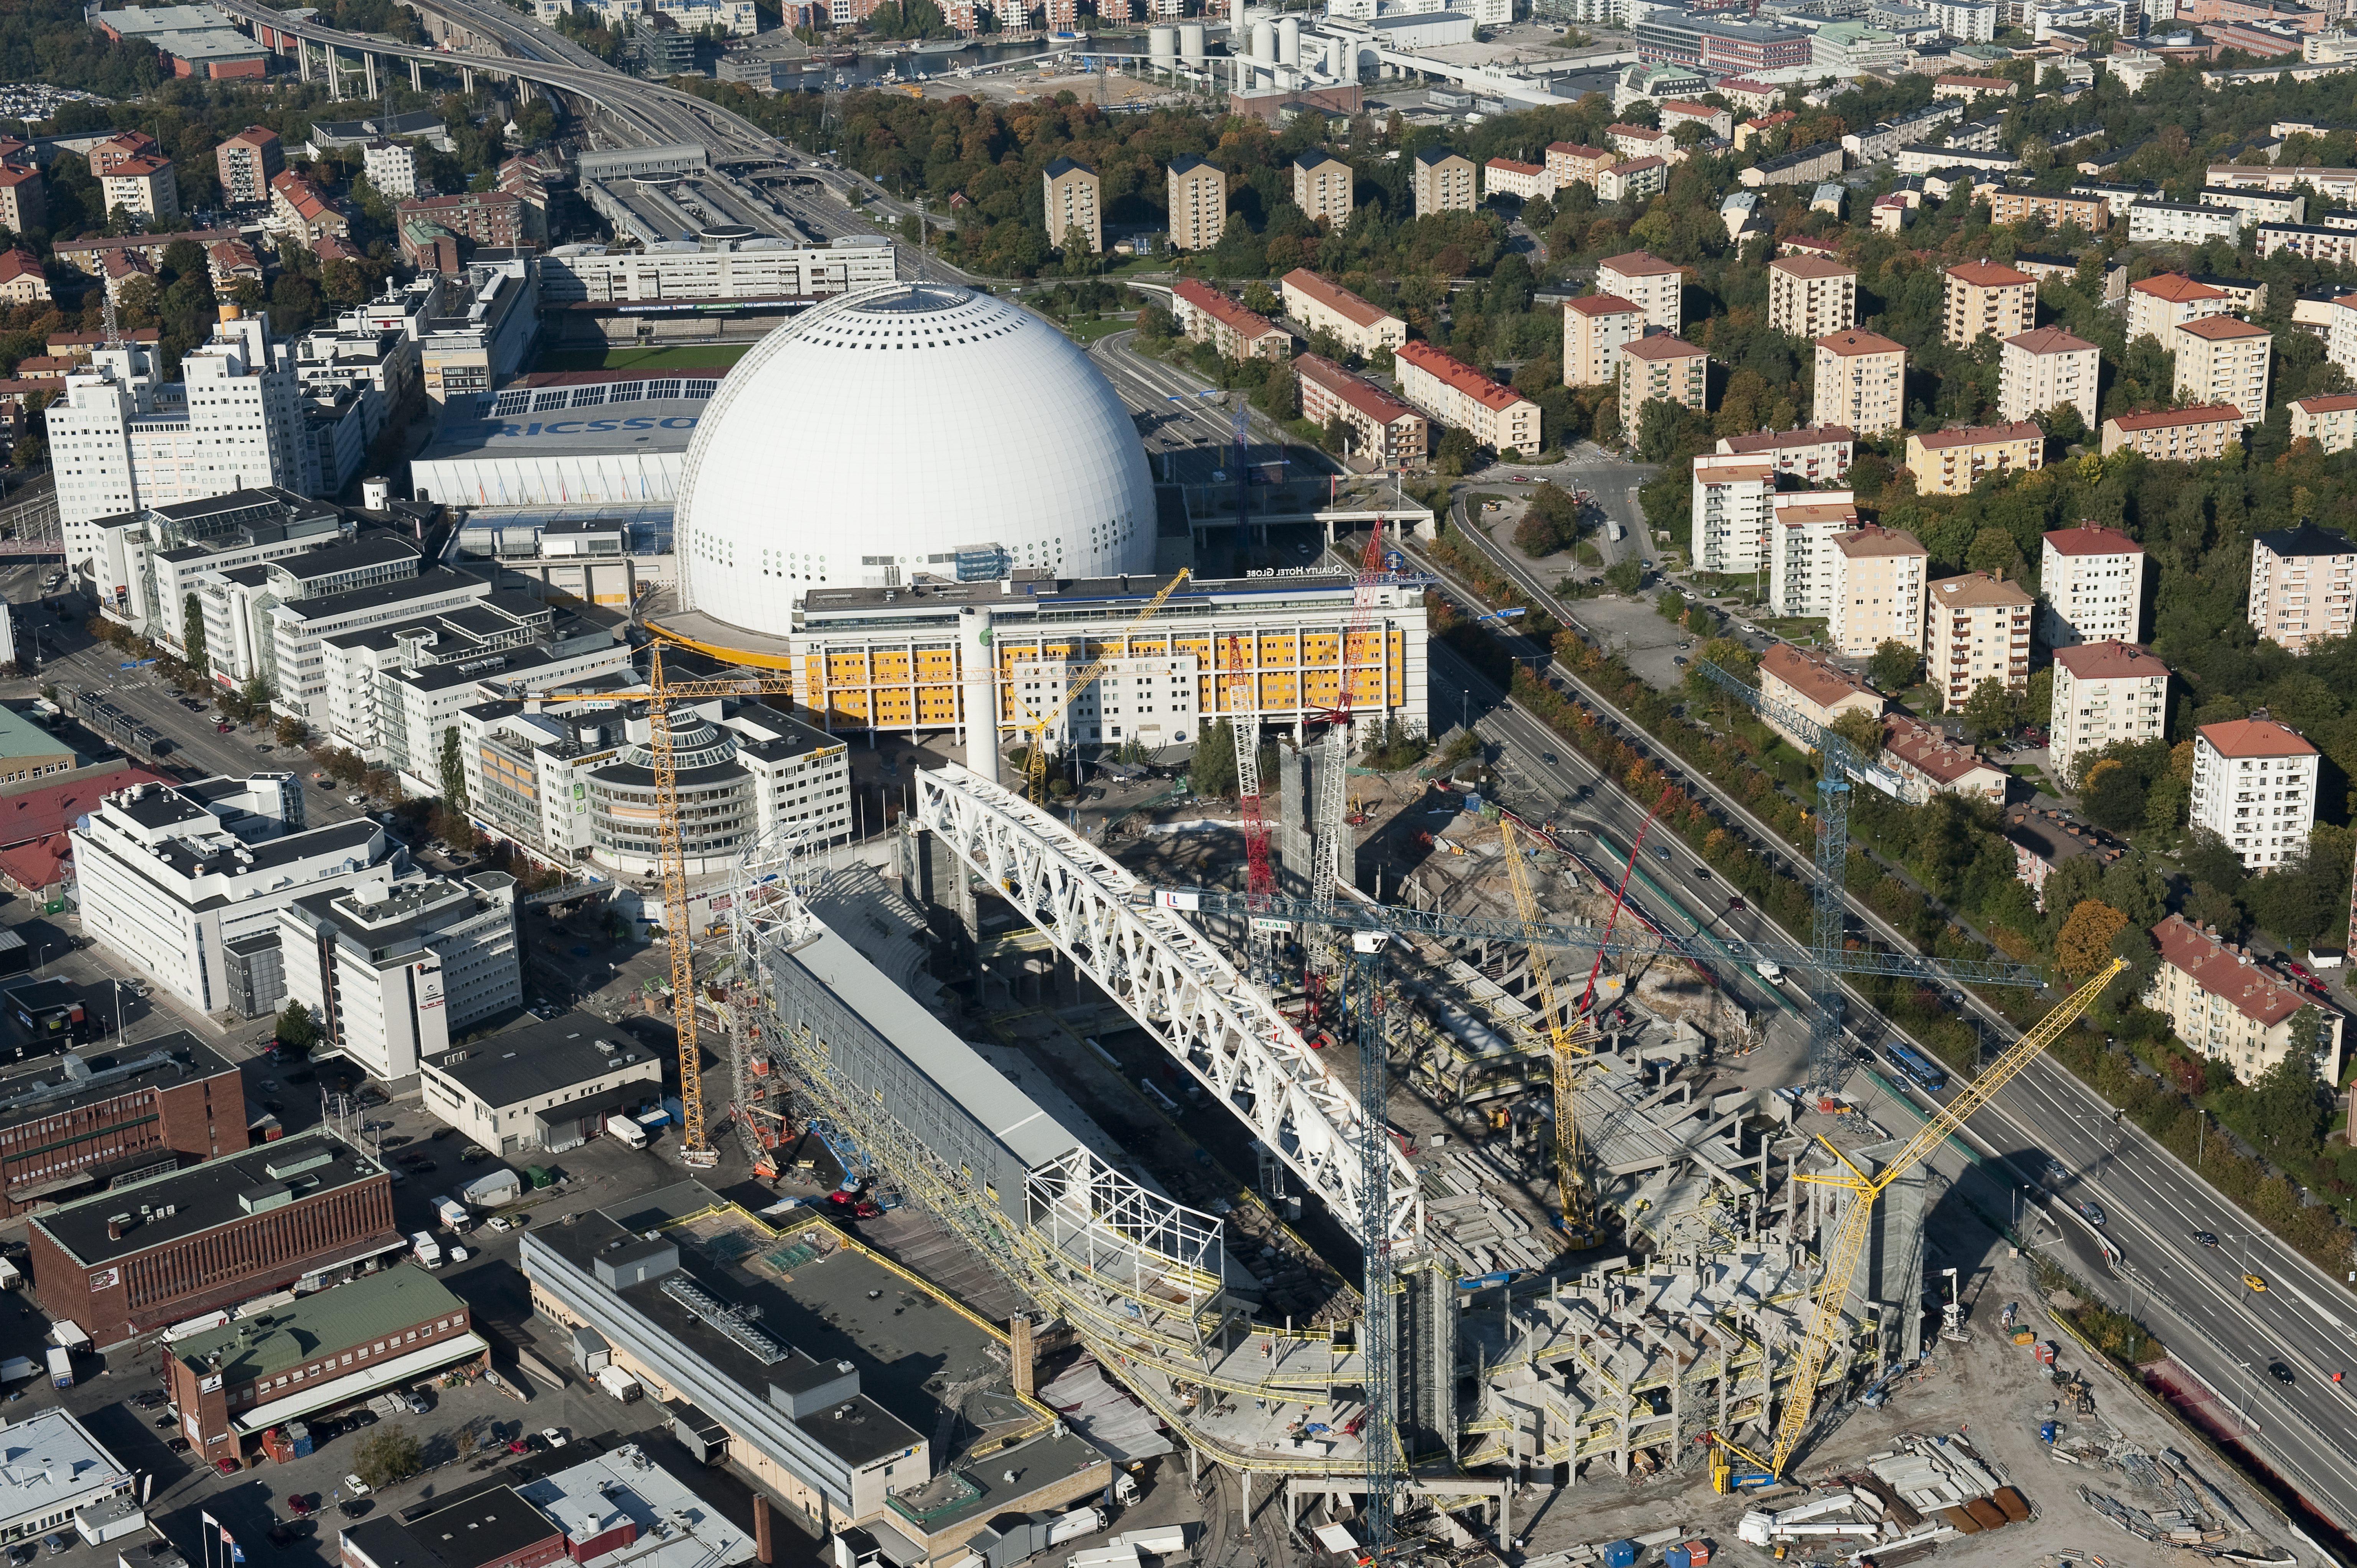 Vy över Stockholmsarenan, Söderstadion skymtar där bakom.